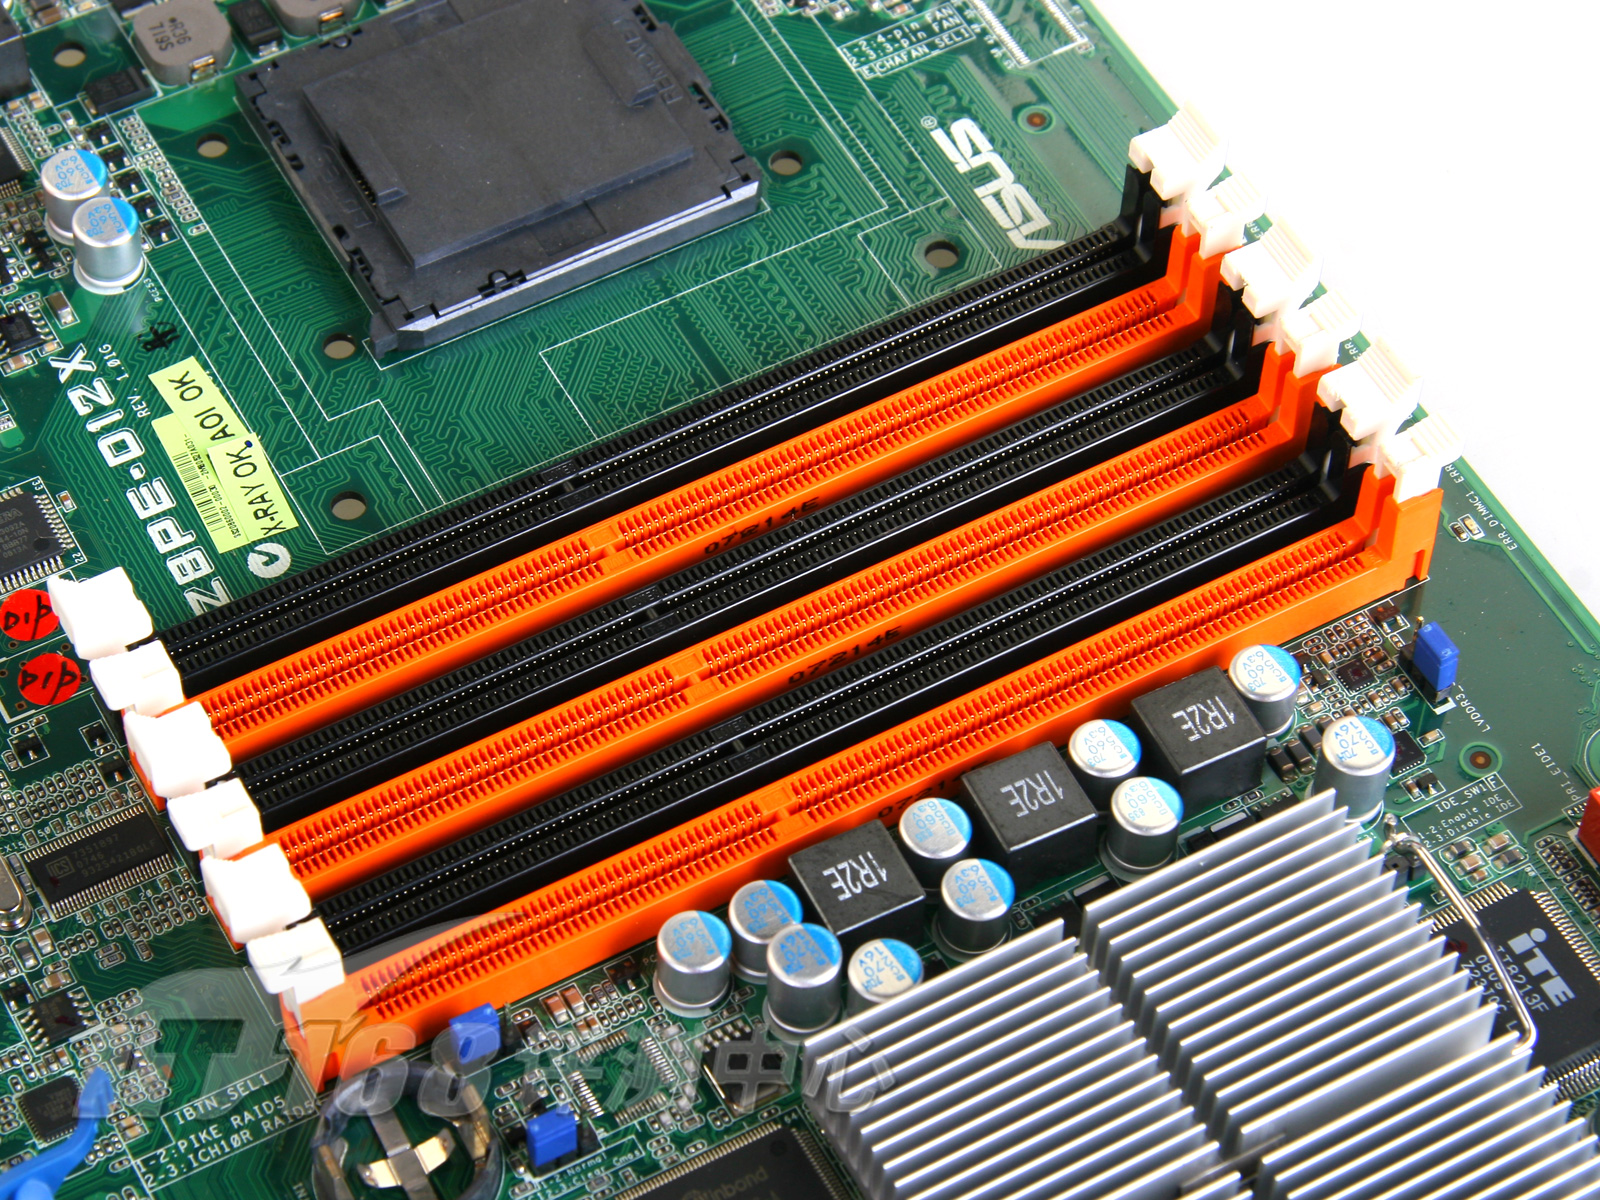 华硕 Z87 主板与 DDR3 内存：速度与力量的完美融合，电脑性能的极致追求  第9张